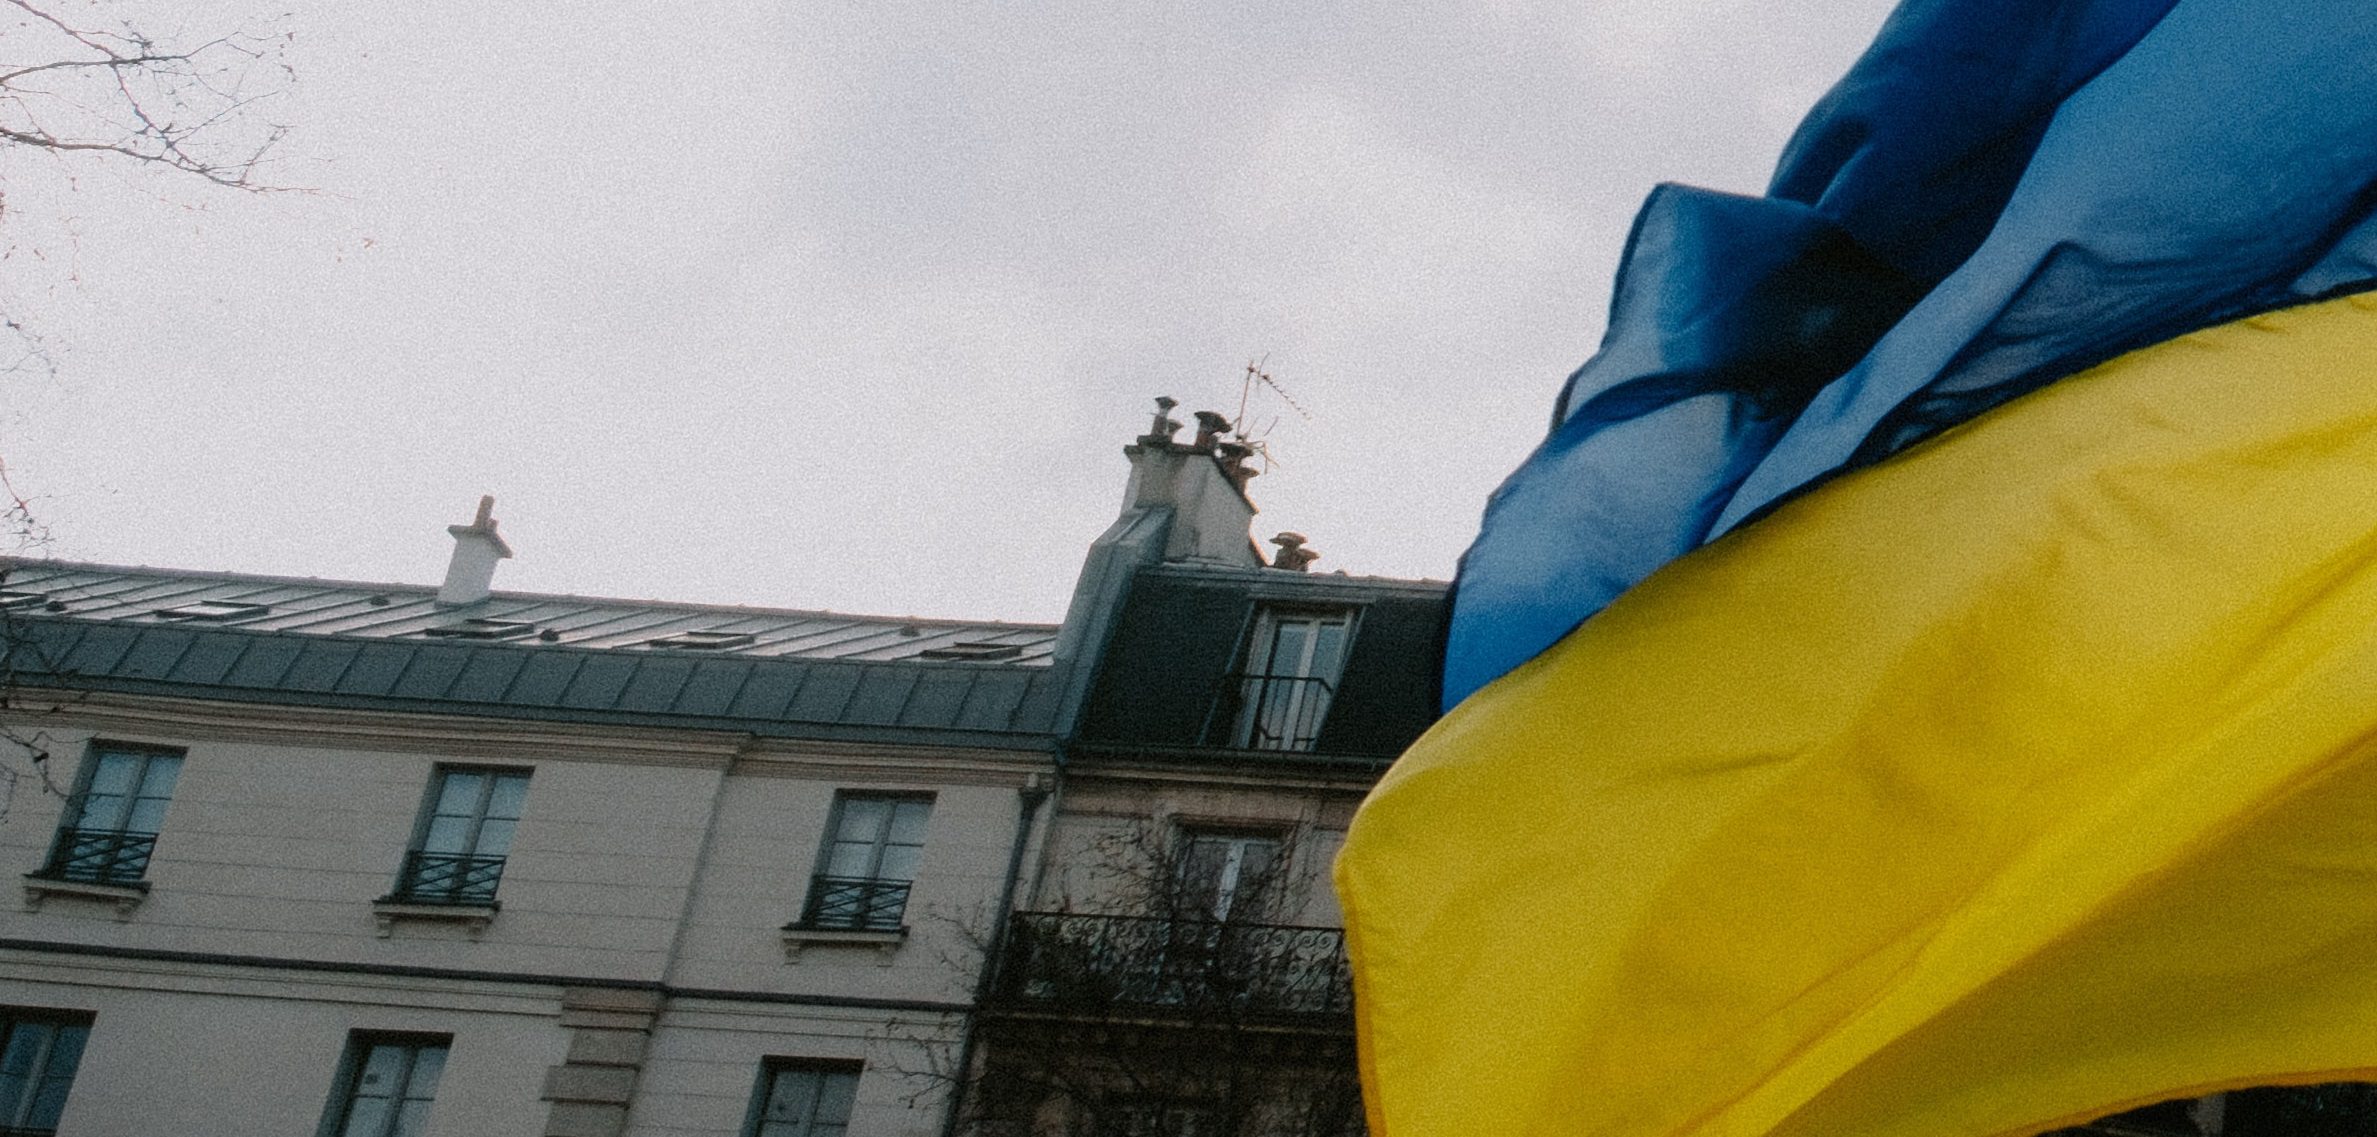 Ricostruzione Ucraina, come e perché iniziare subito